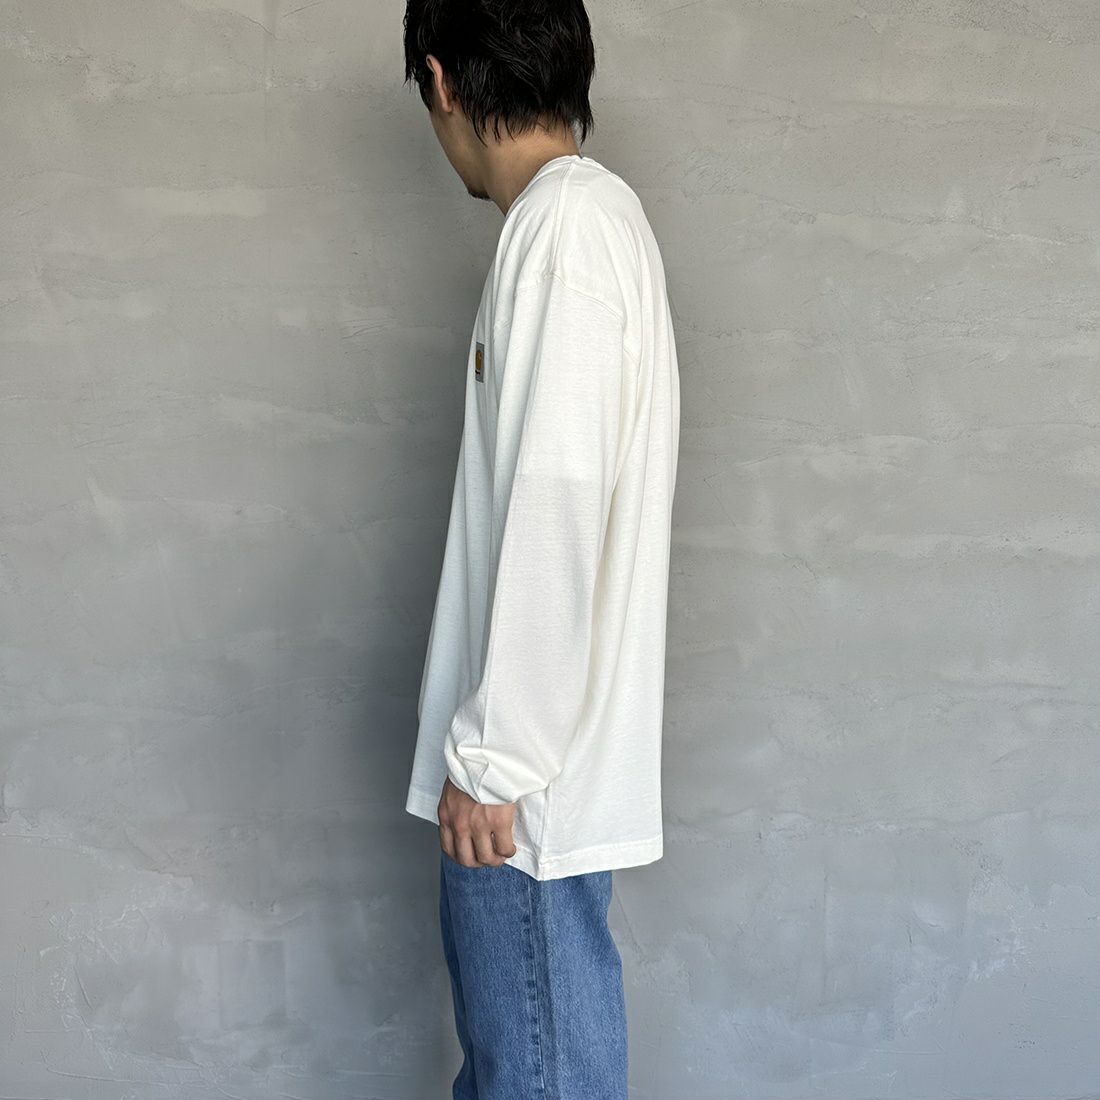 carhartt WIP [カーハートダブリューアイピー] ロングスリーブネルソンTシャツ [I029948] WAX &&モデル身長：173cm 着用サイズ：L&&